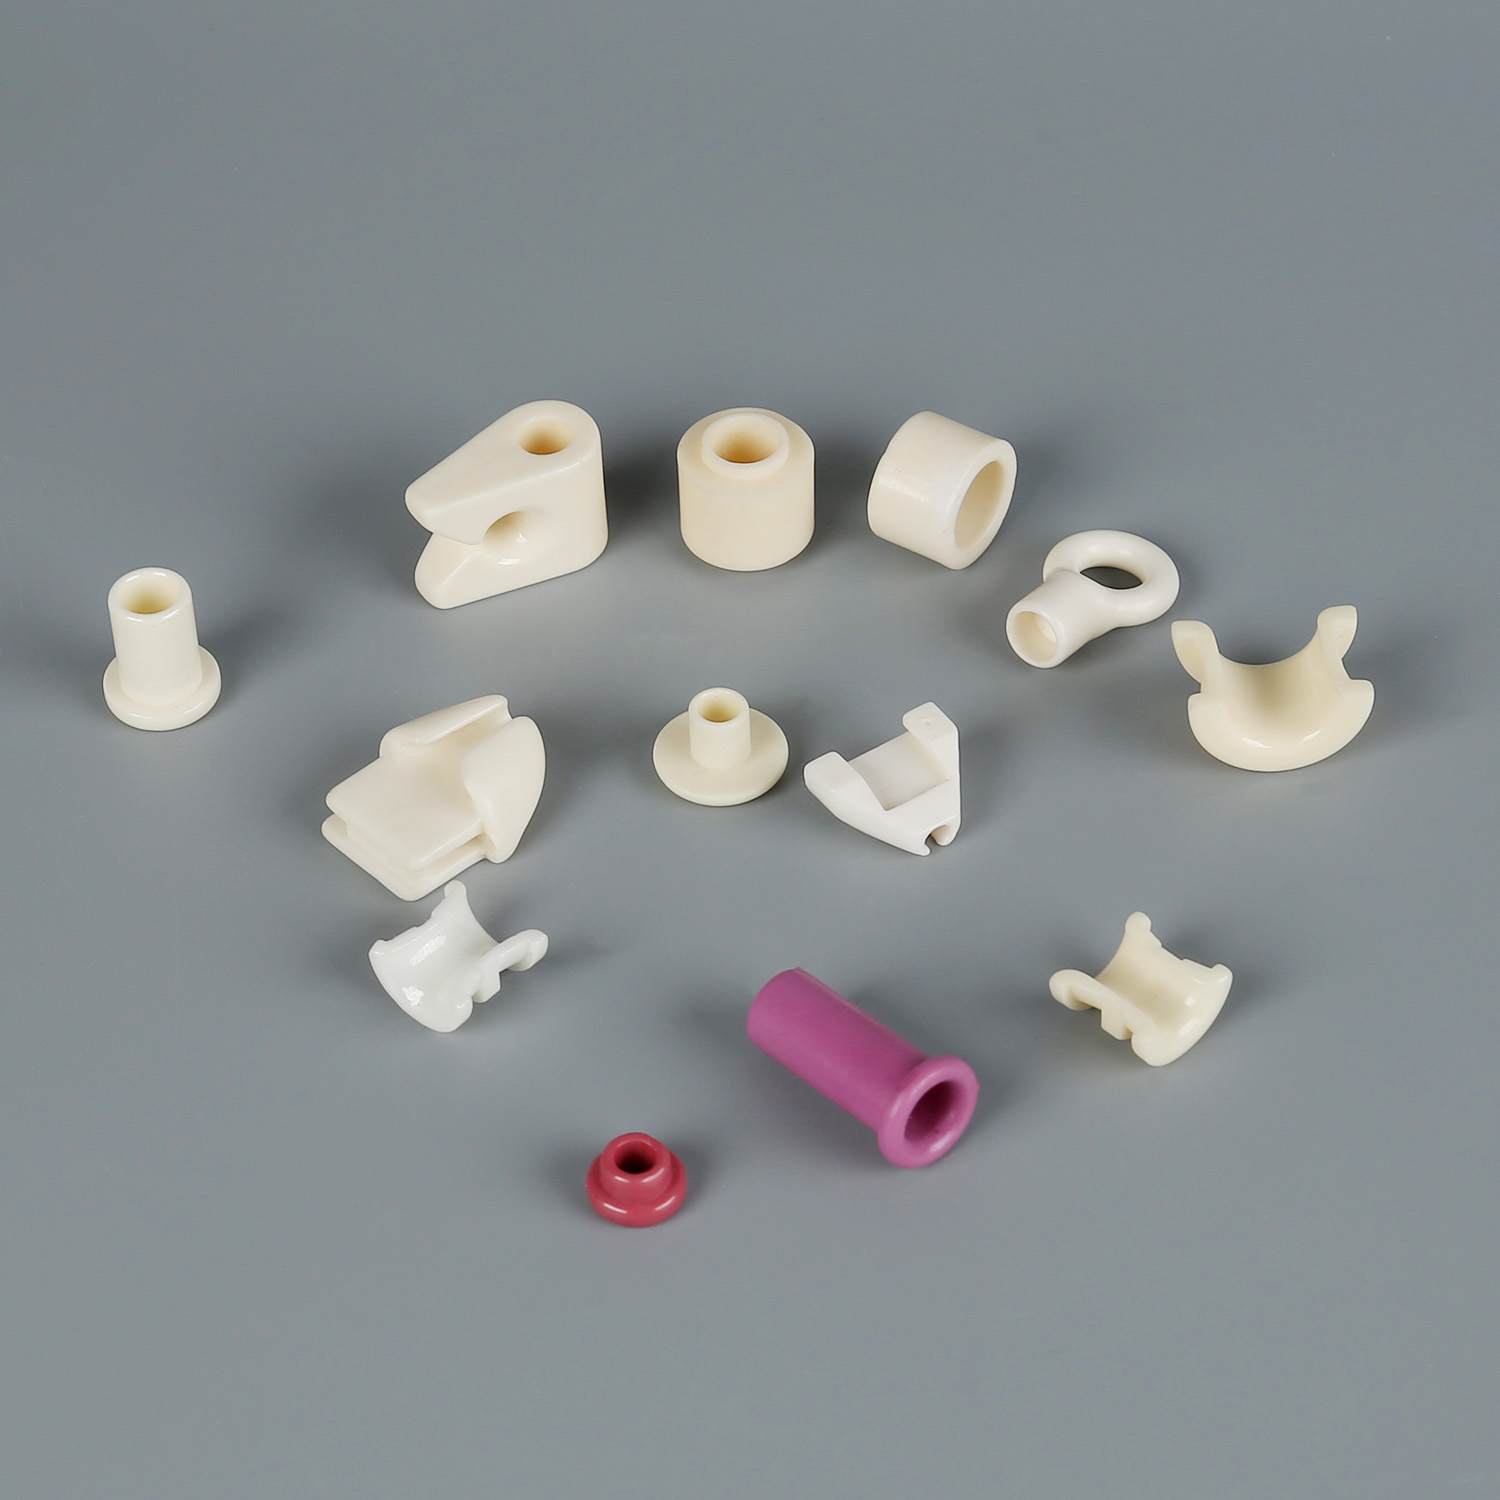 Ceramic Precision Structural Components